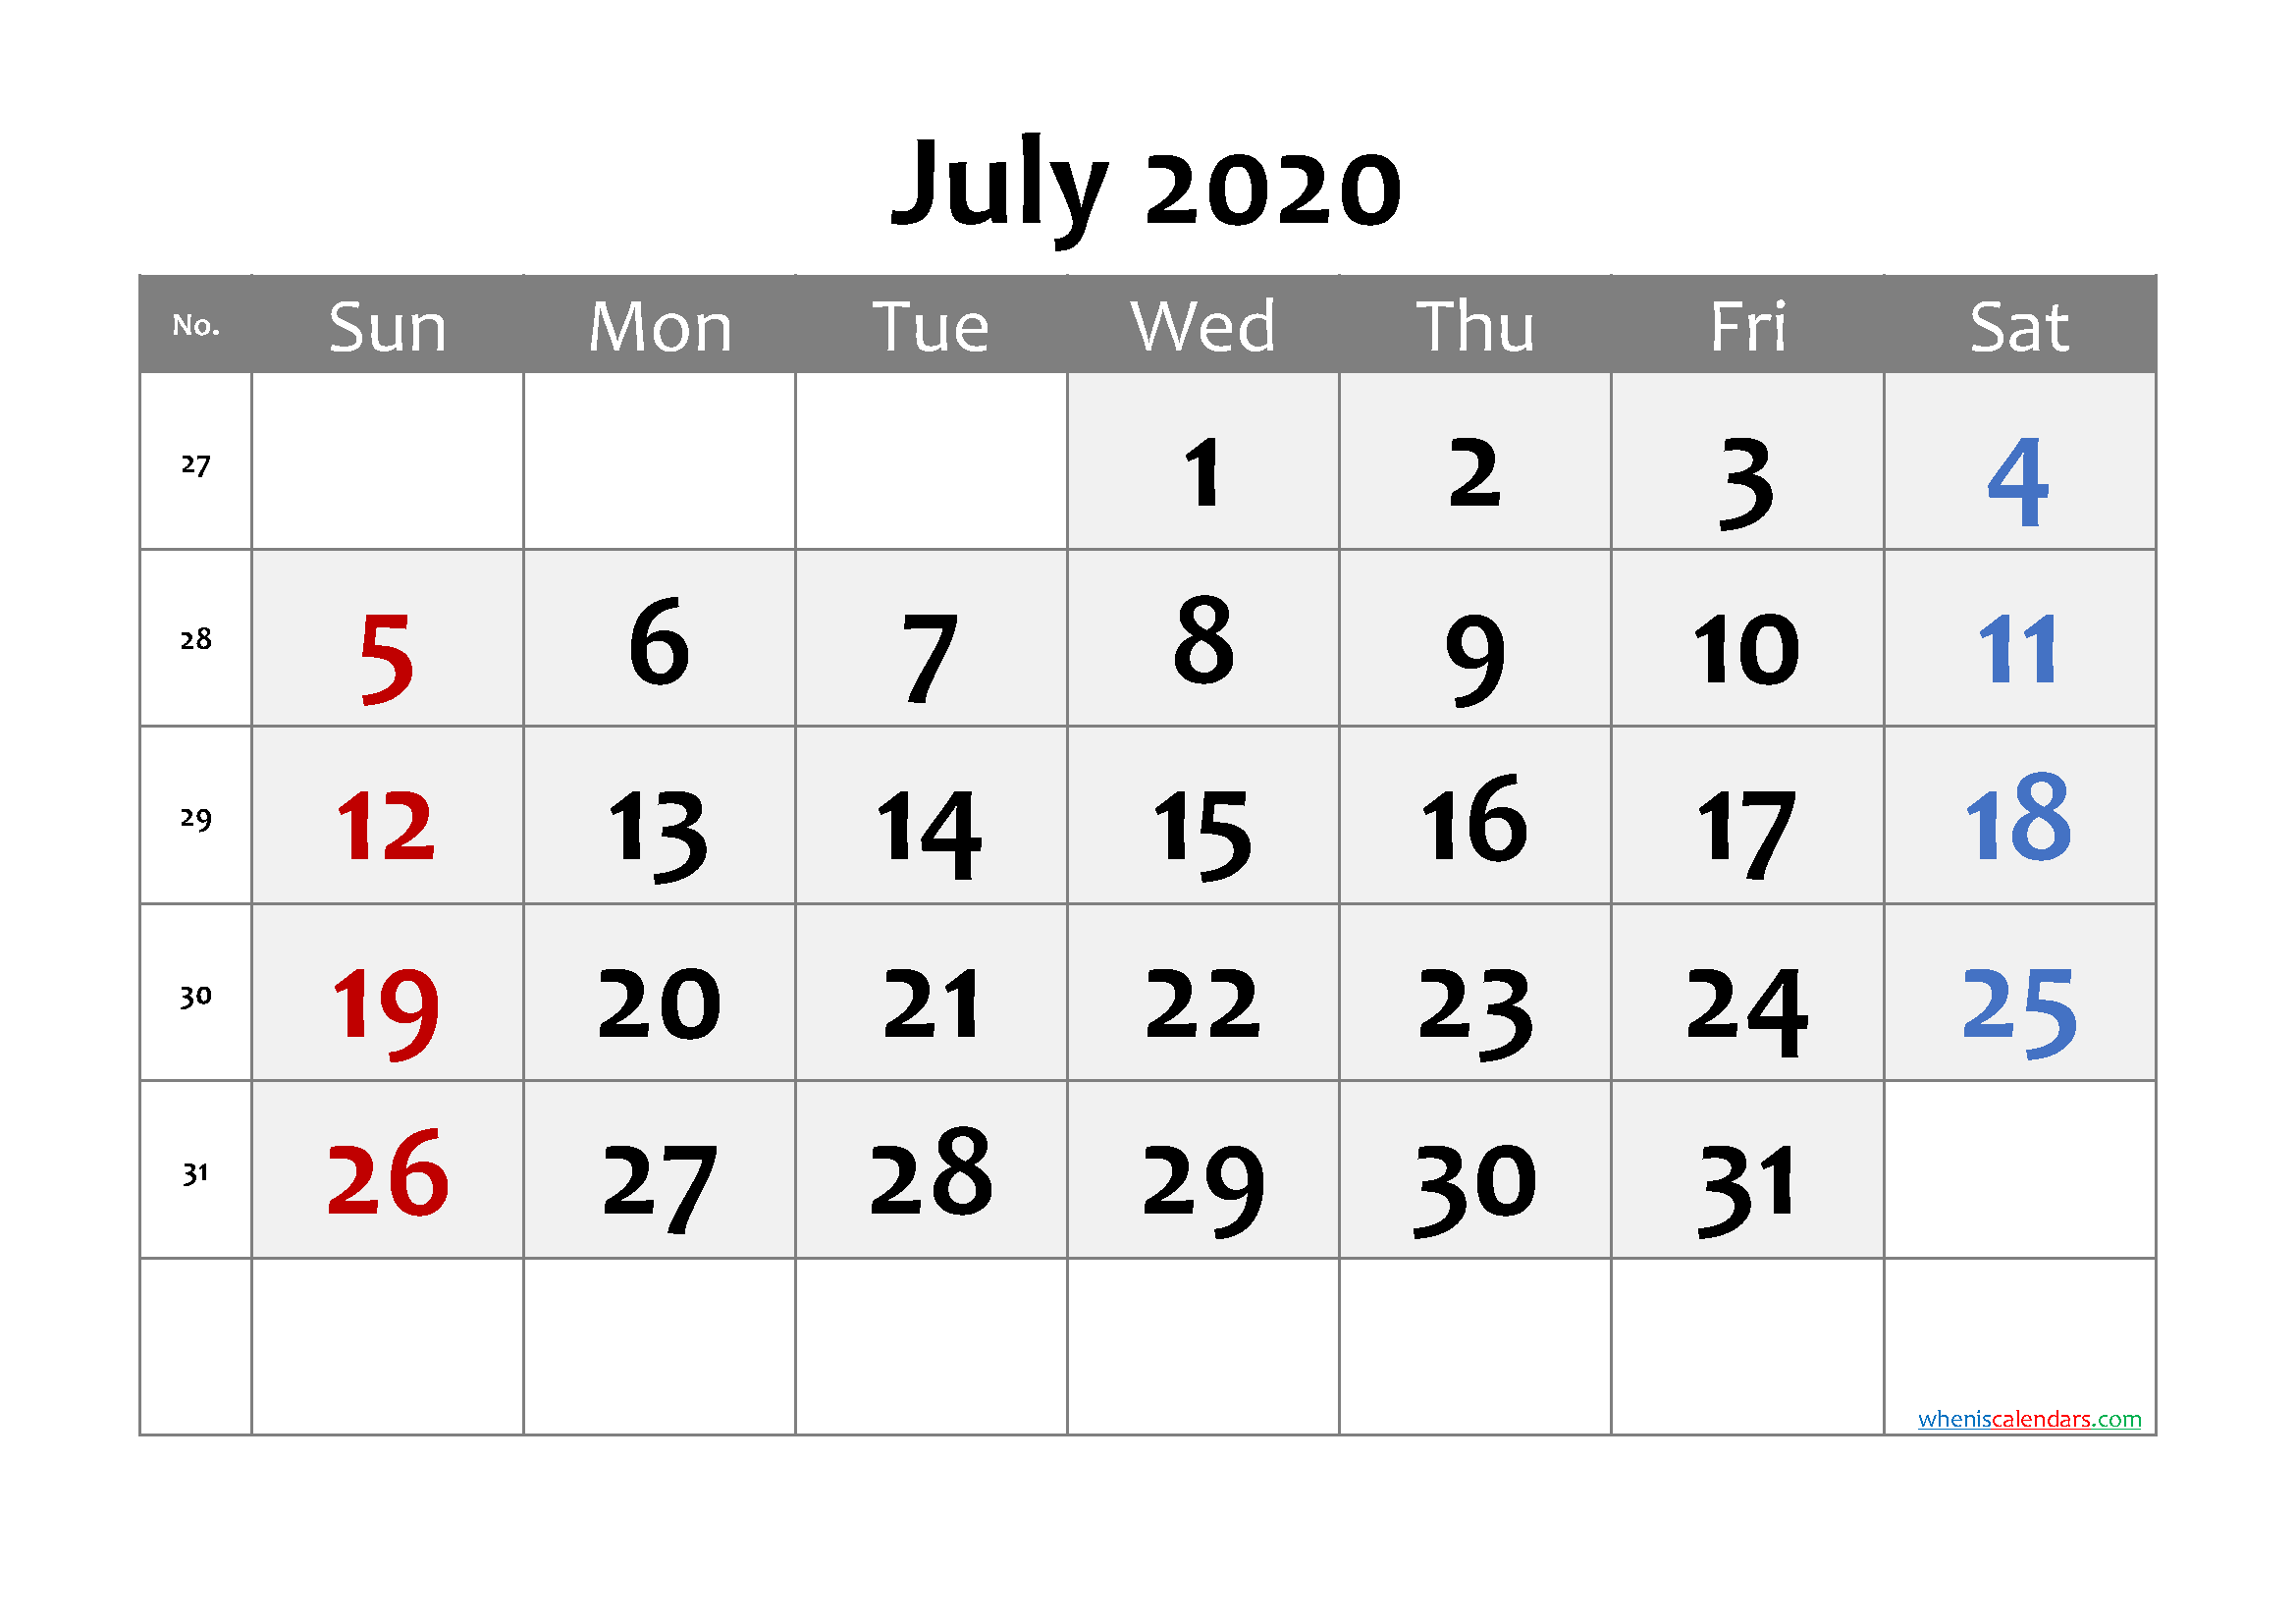 July 2020 Printable Calendar with Week Numbers